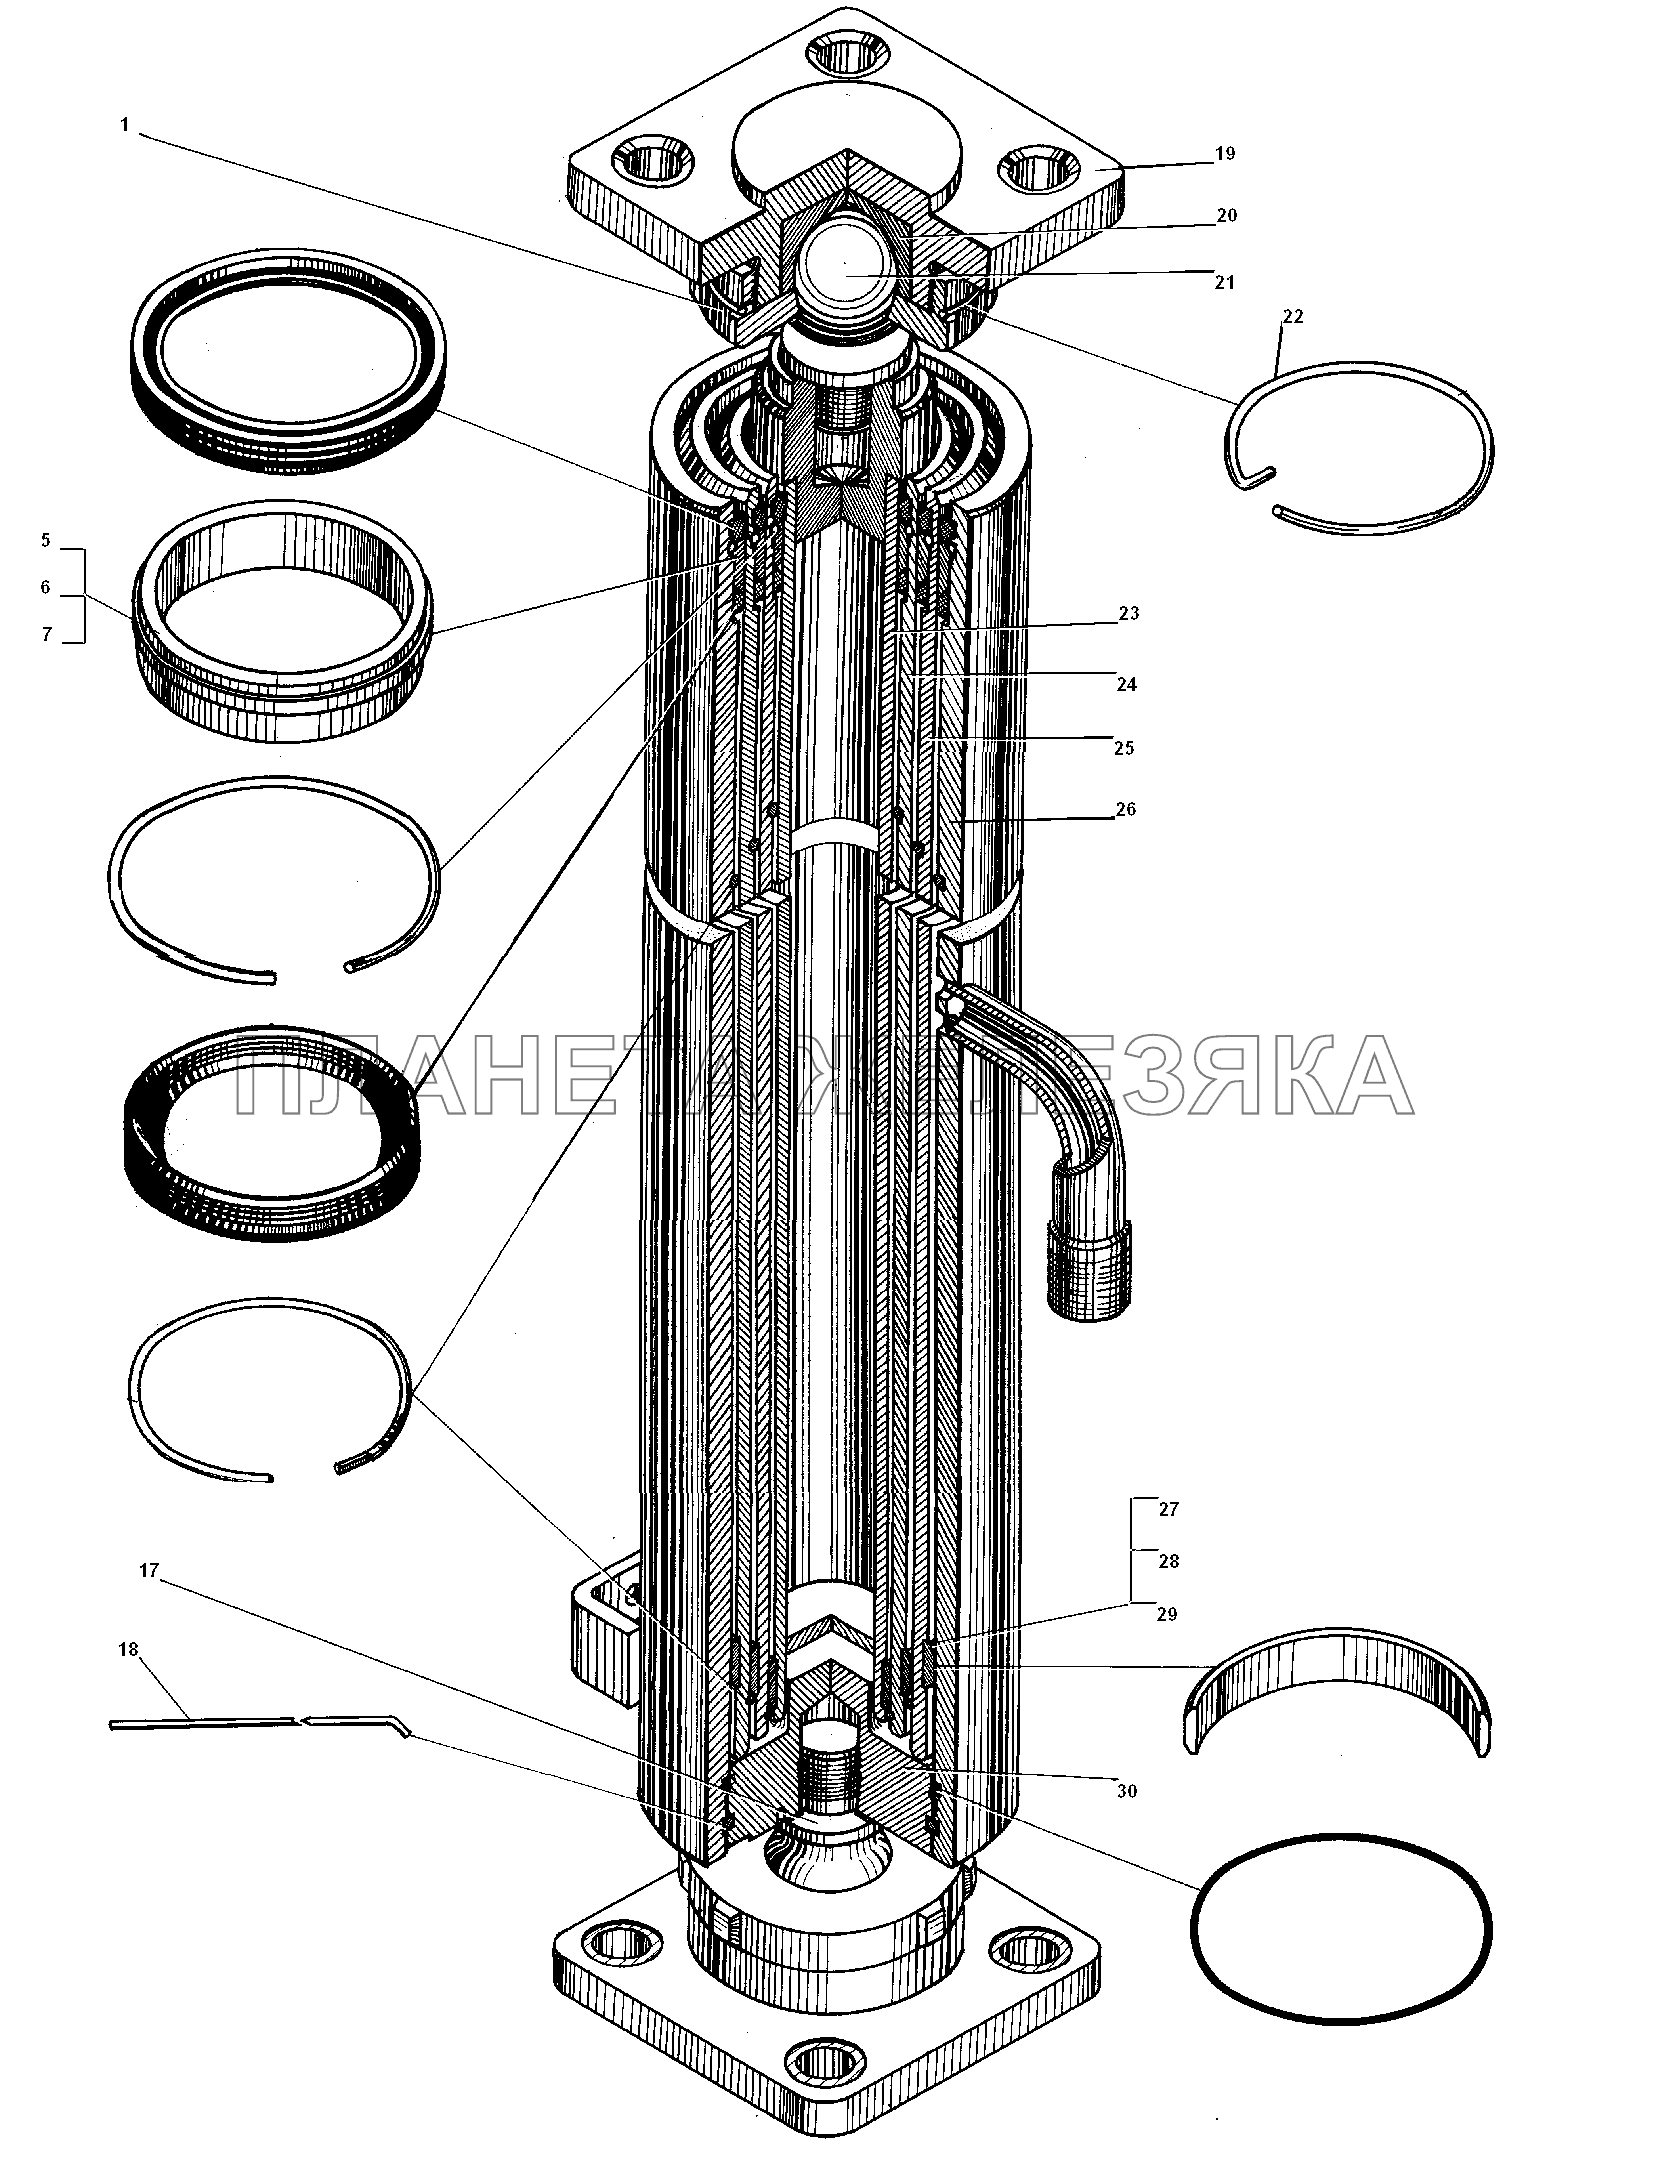 Гидроцилиндр подъема платформы УРАЛ-5557-31